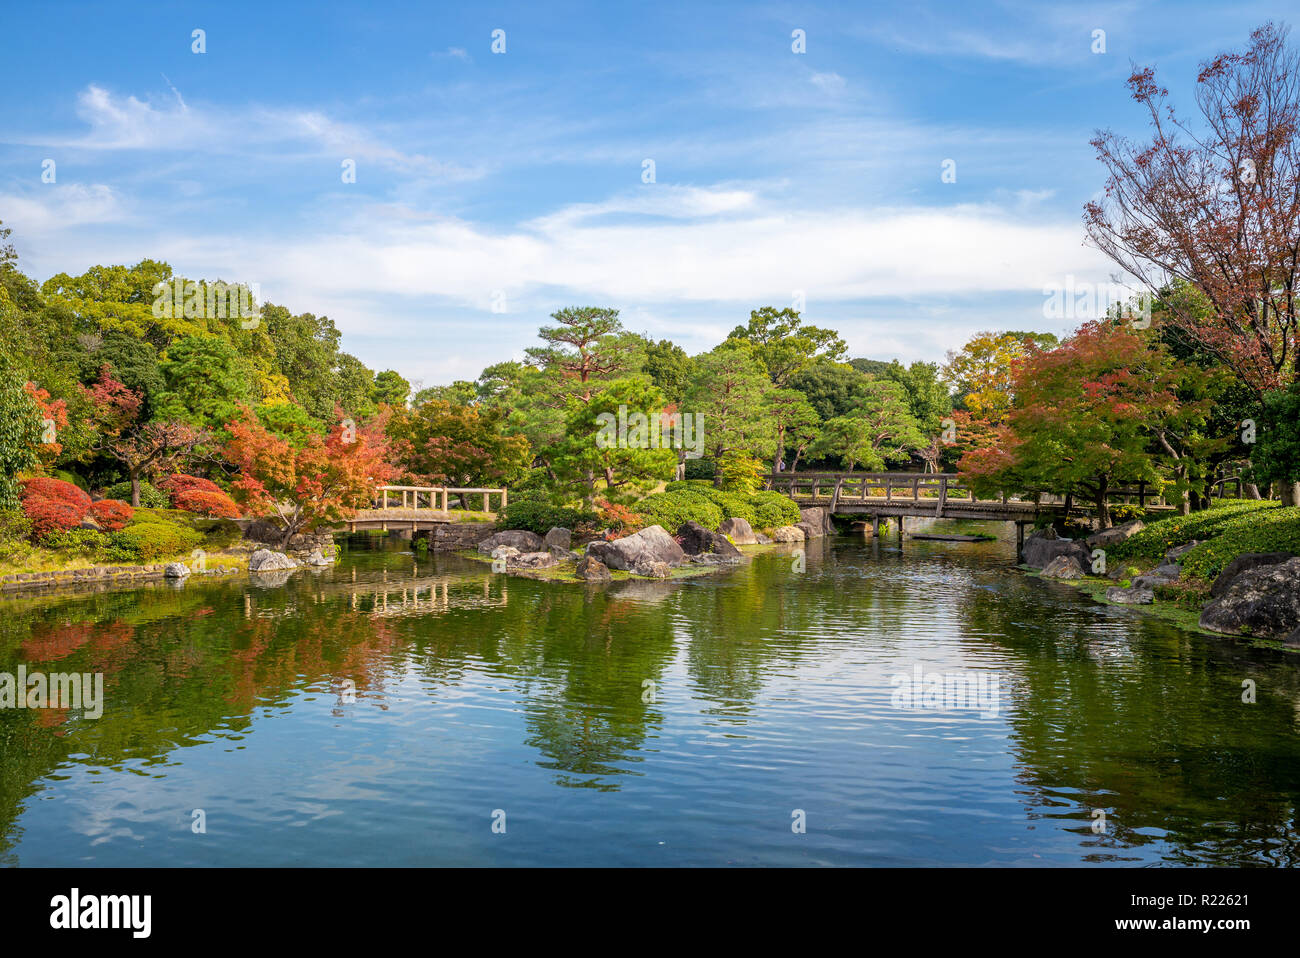 Shirotori Garden, a Japanese garden in nagoya Stock Photo